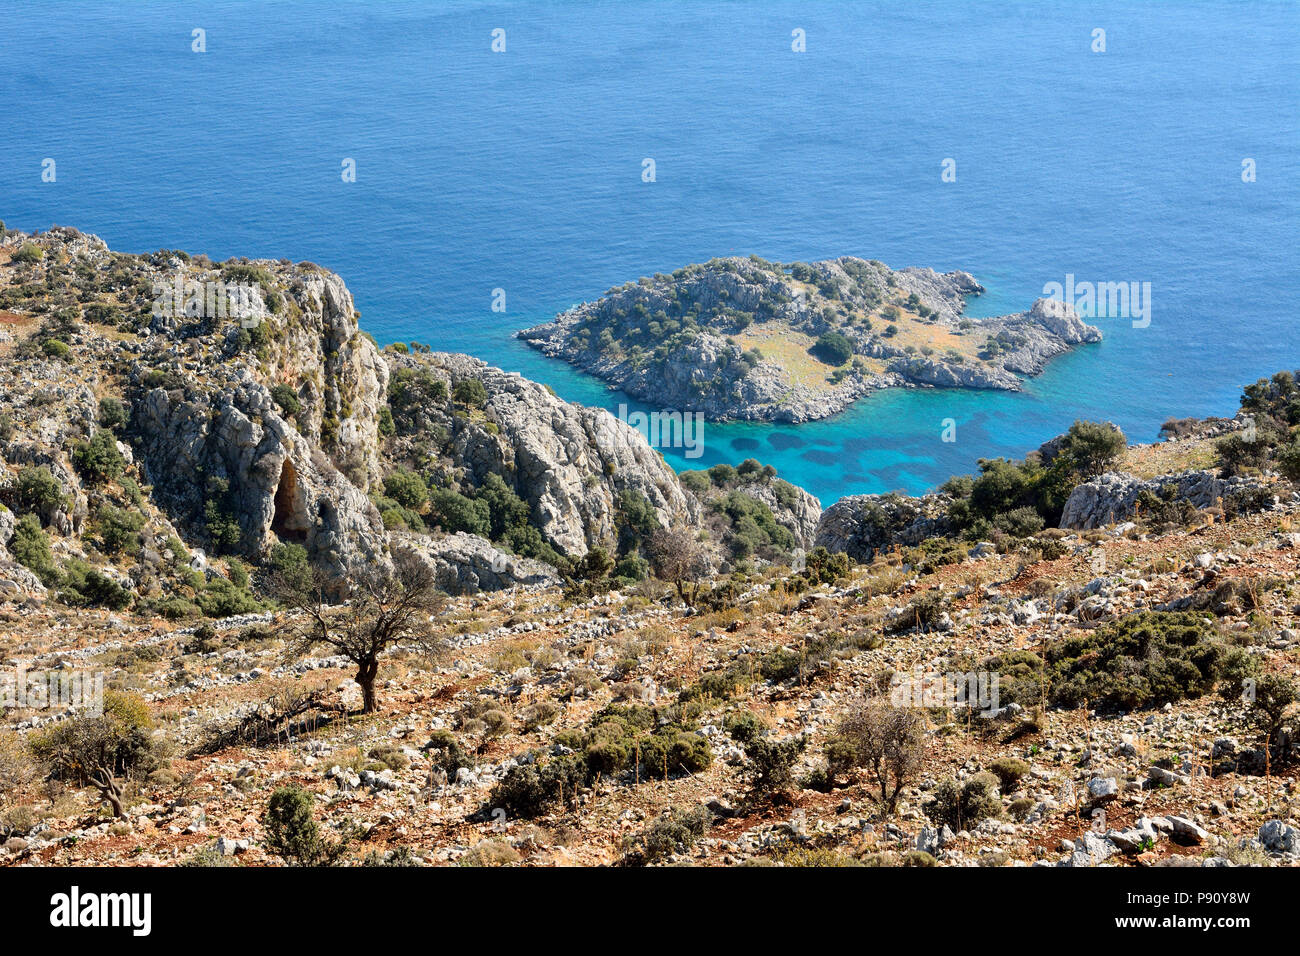 Mittelmeerküste zwischen Sogut und Taslica auf der Halbinsel Bozburun bei Marmaris Resort Stadt in der Türkei, mit unbewohnten Arap Adasi Insel. Stockfoto